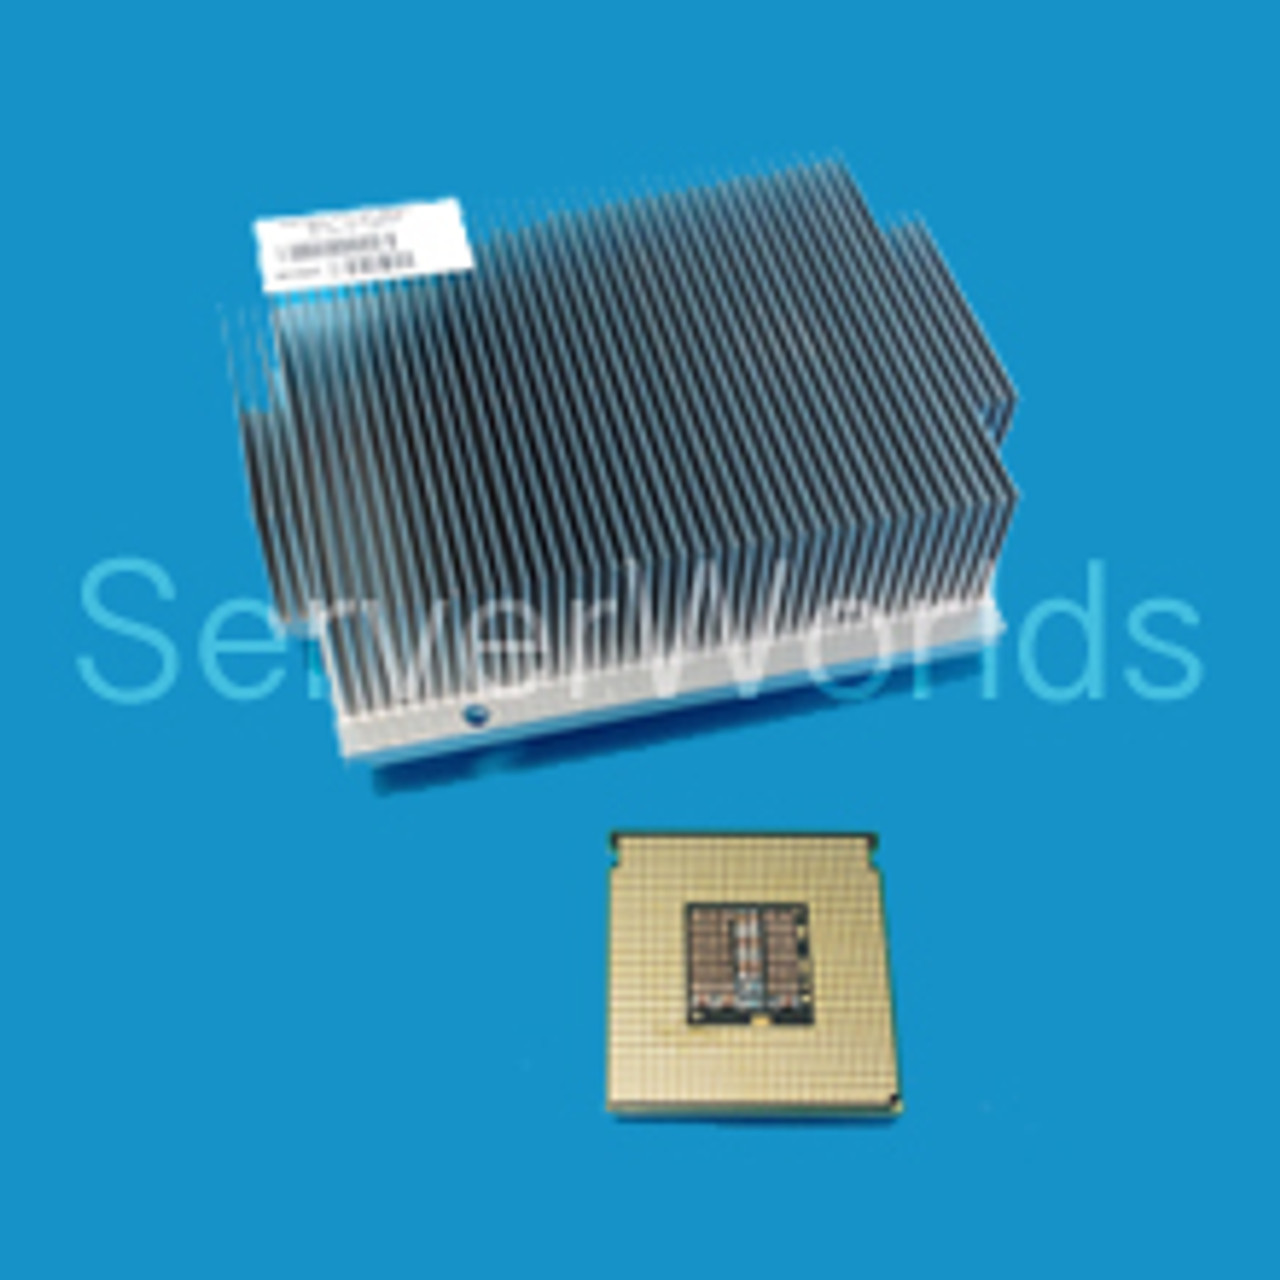 HP DL360 G5 Quad Core X5460 3.16GHz Processor Kit 457929-B21